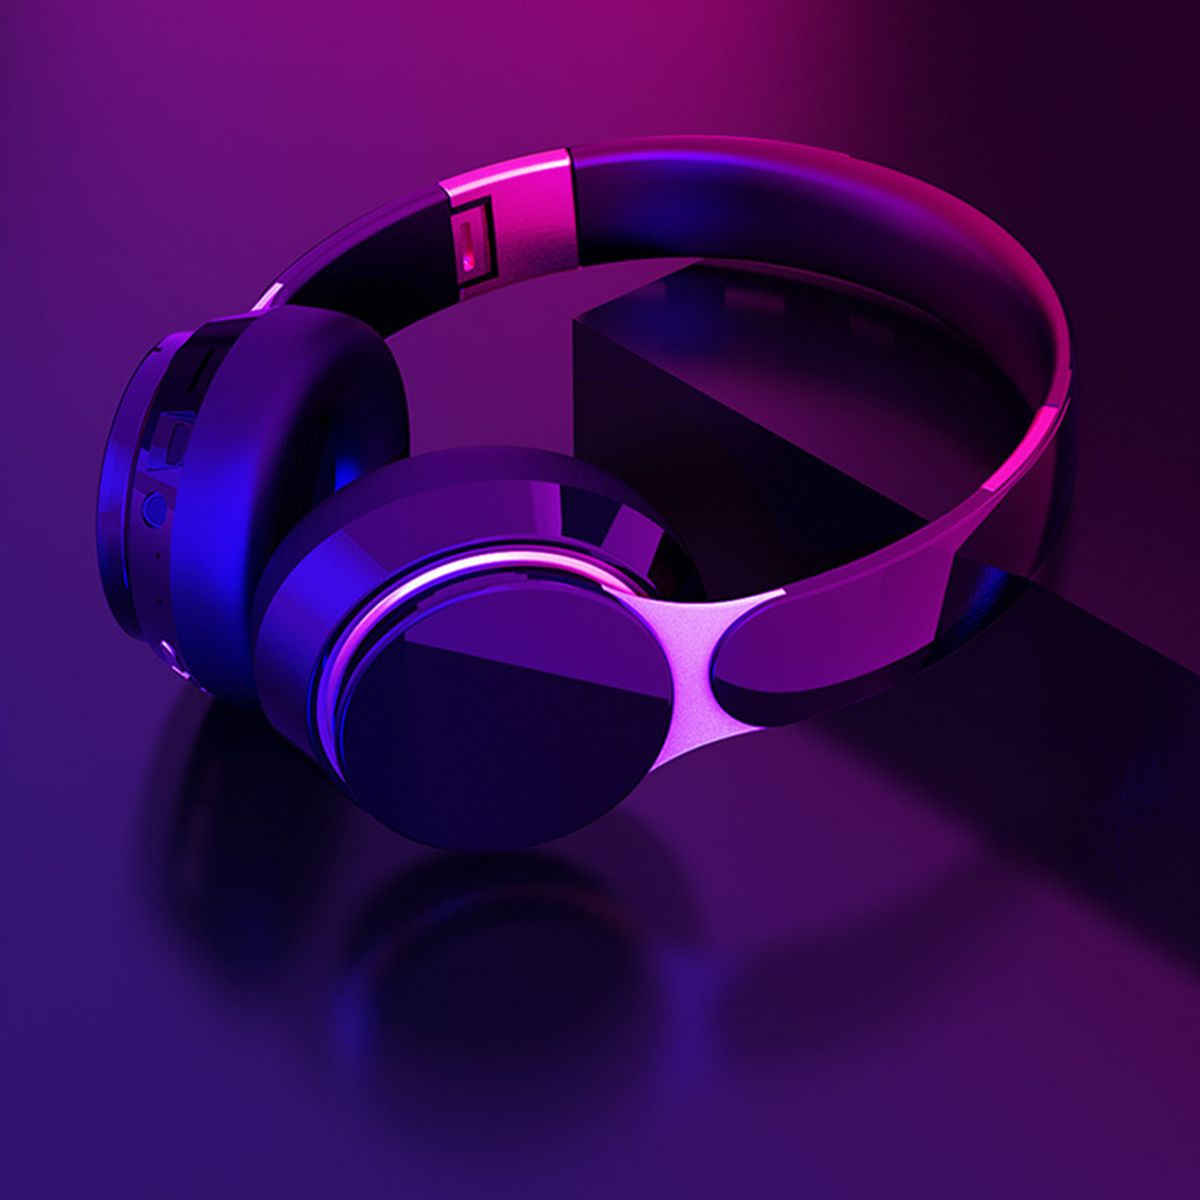 KINSI Kabellose Kopfhörer,Sport-Kopfhörer,Bluetooth,Kabelgebundene Over-Ear-Kopfhörer, Over-ear blau Bluetooth Kopfhörer